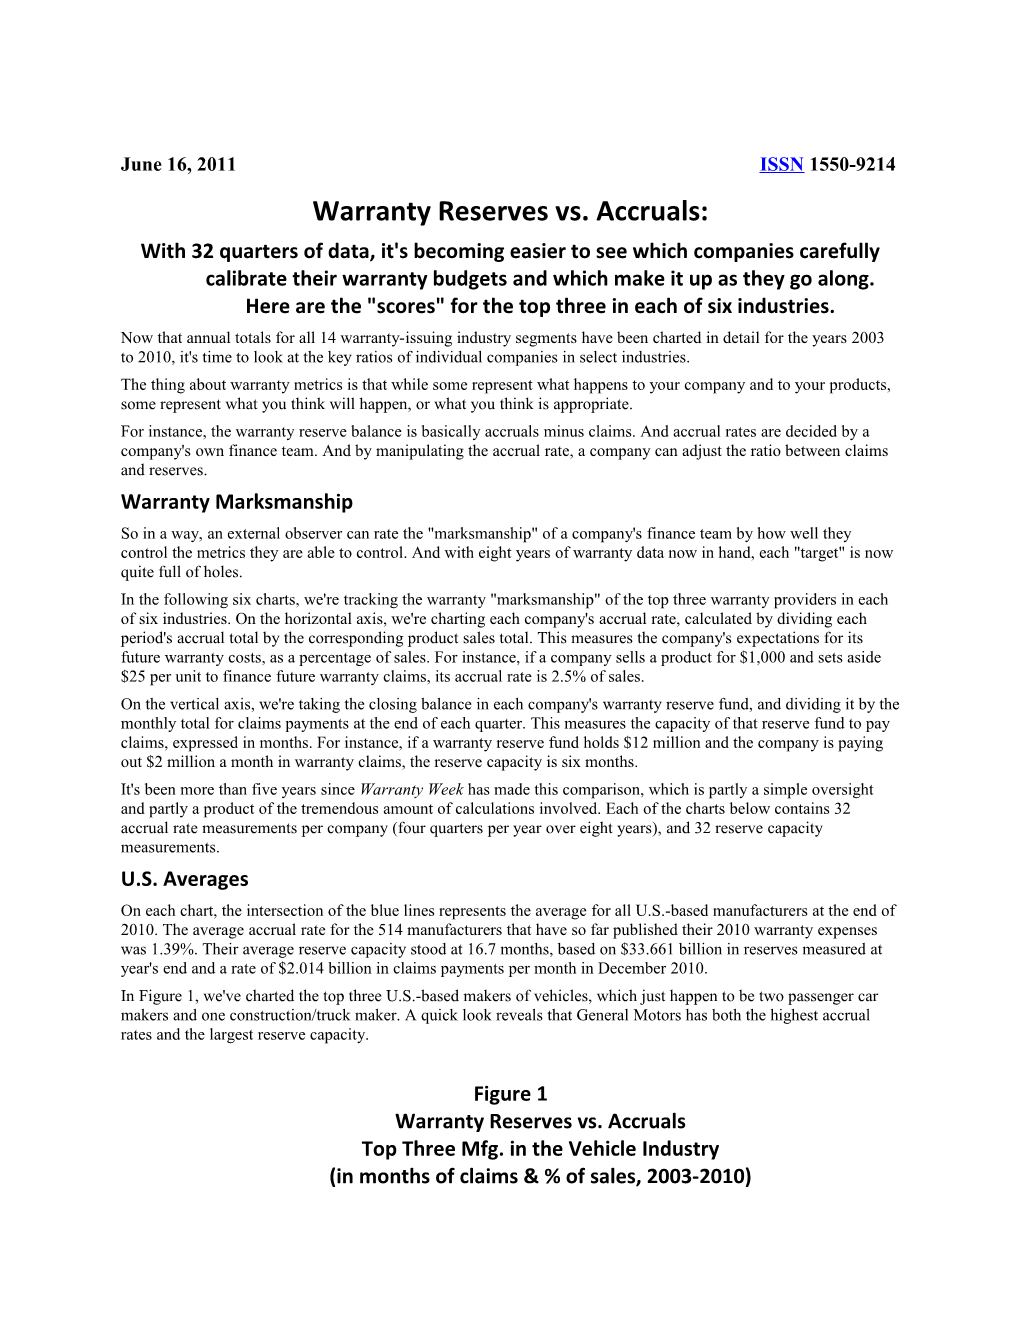 Warranty Reserves Vs. Accruals